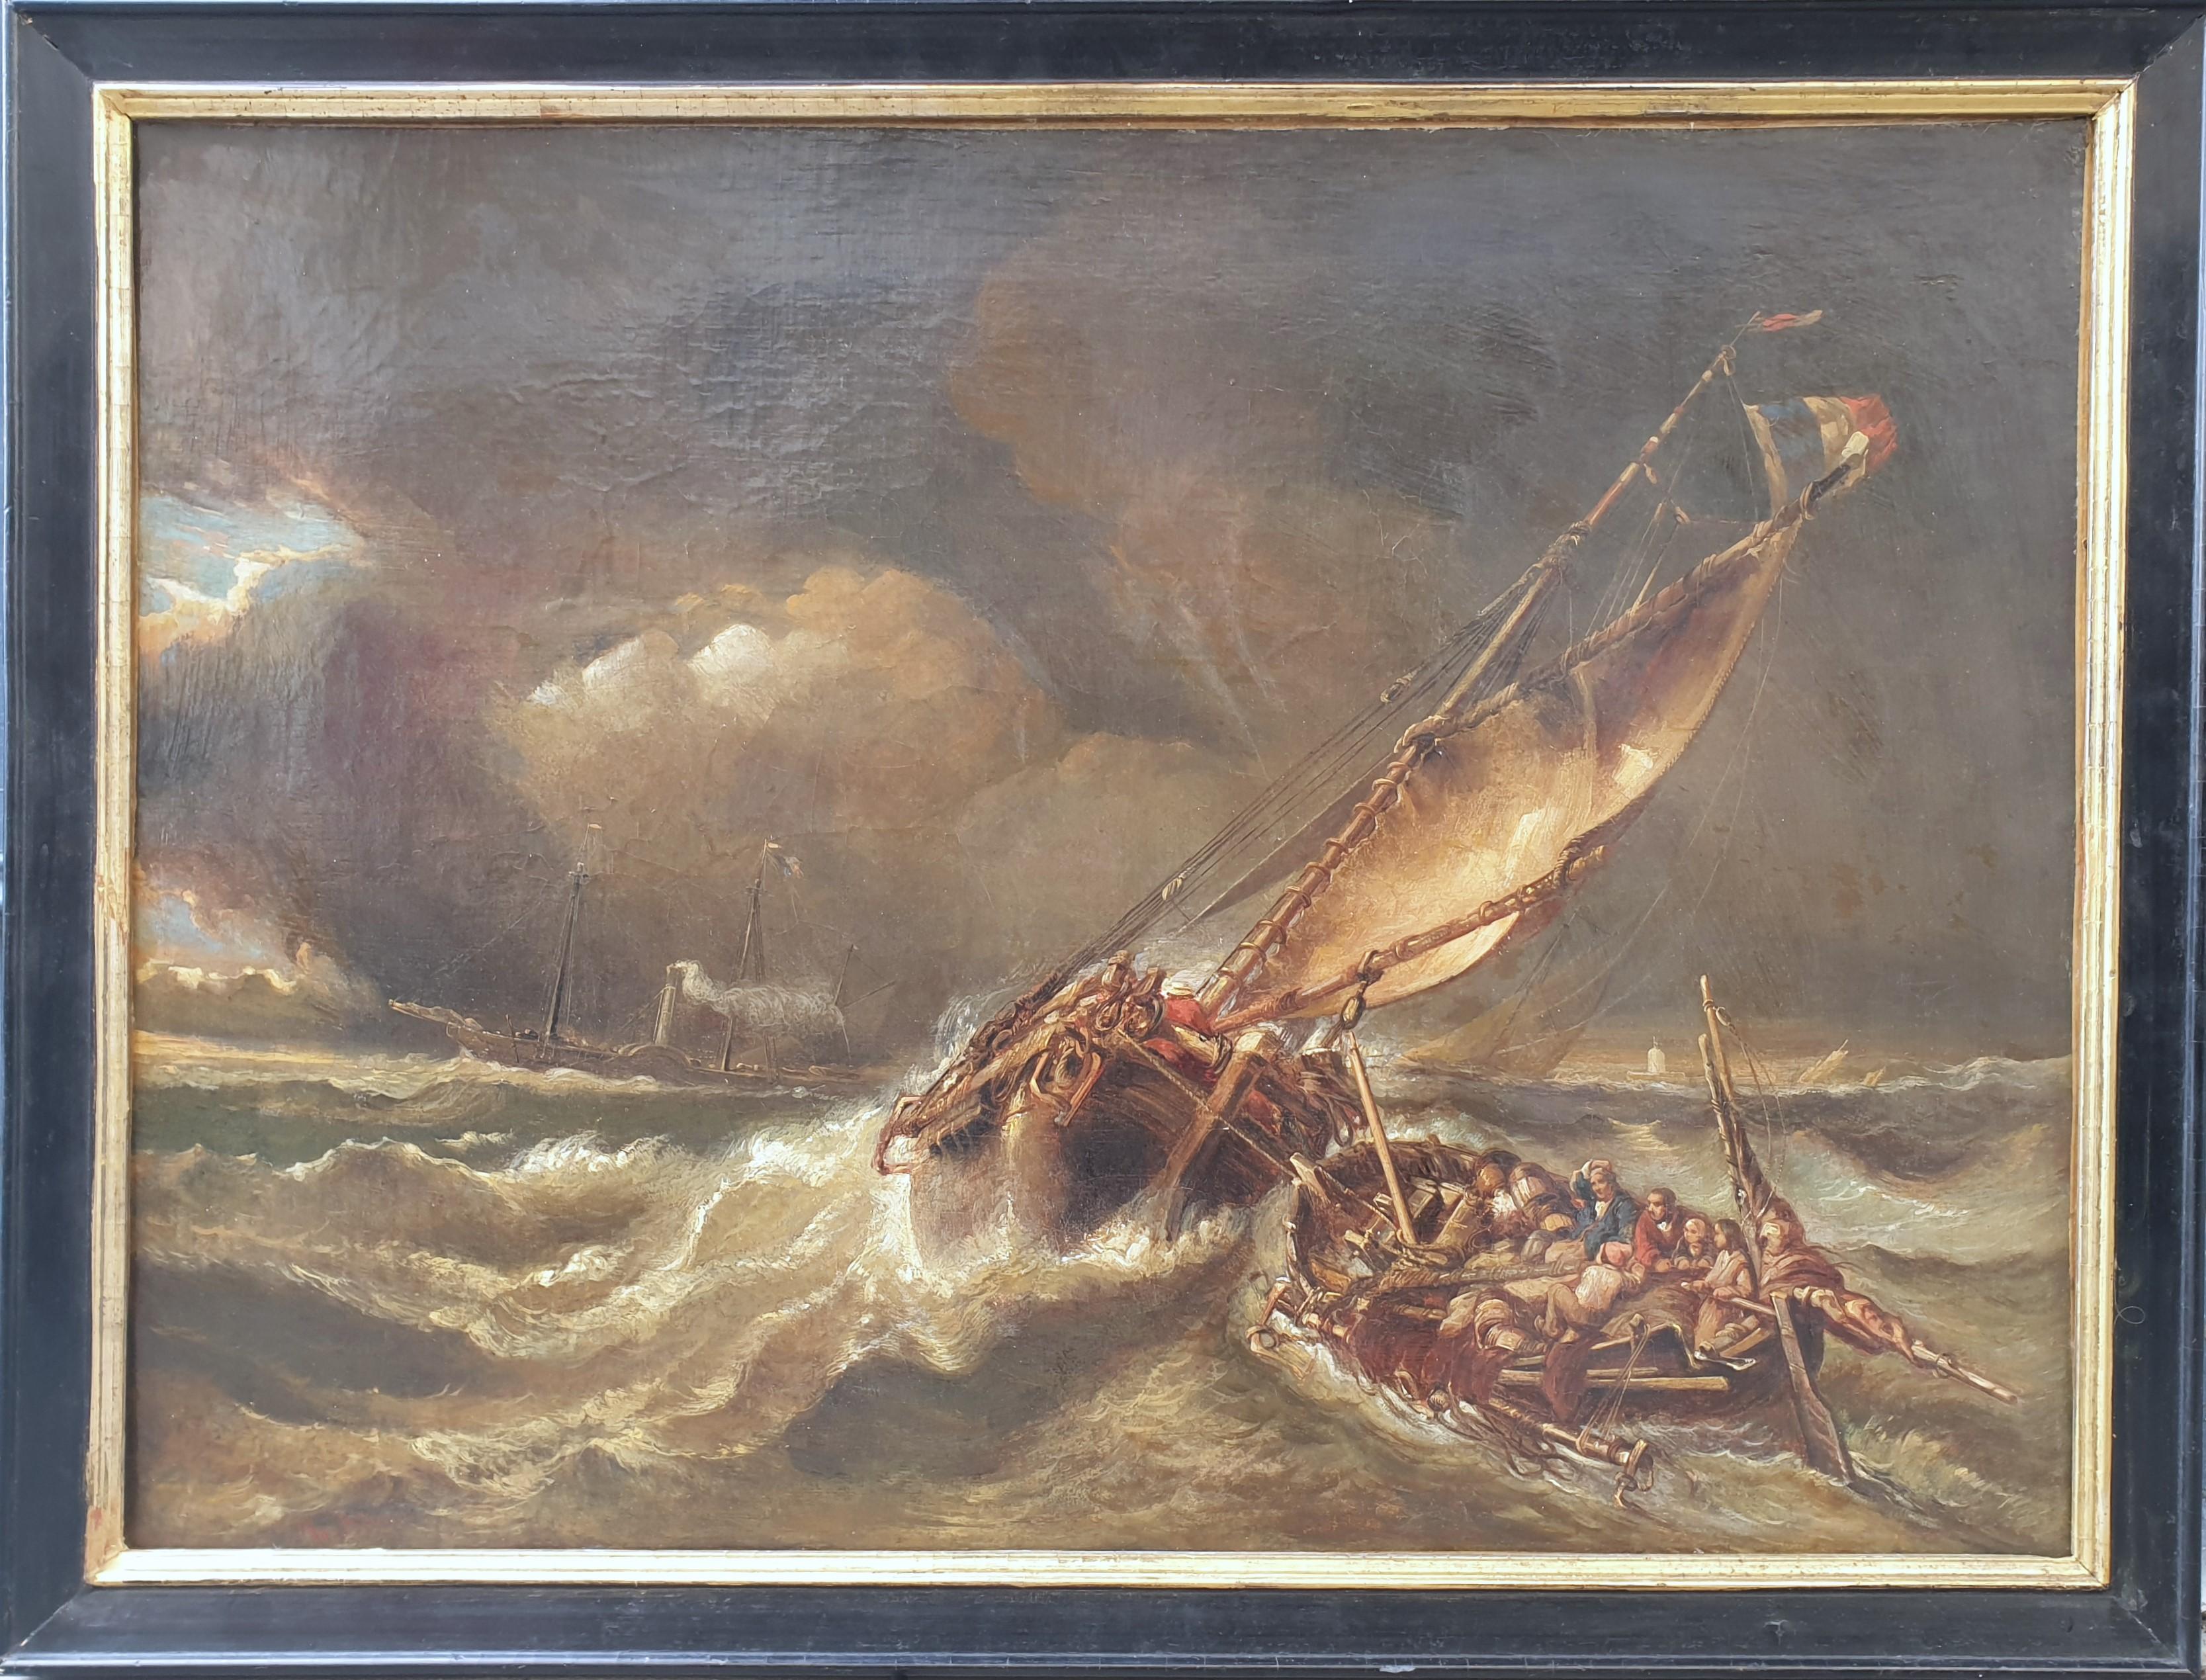 Landscape Painting Hippolyte ADAM - ADAM Marine tempest rescue boats romantique peinture française ISABEY 19ème 